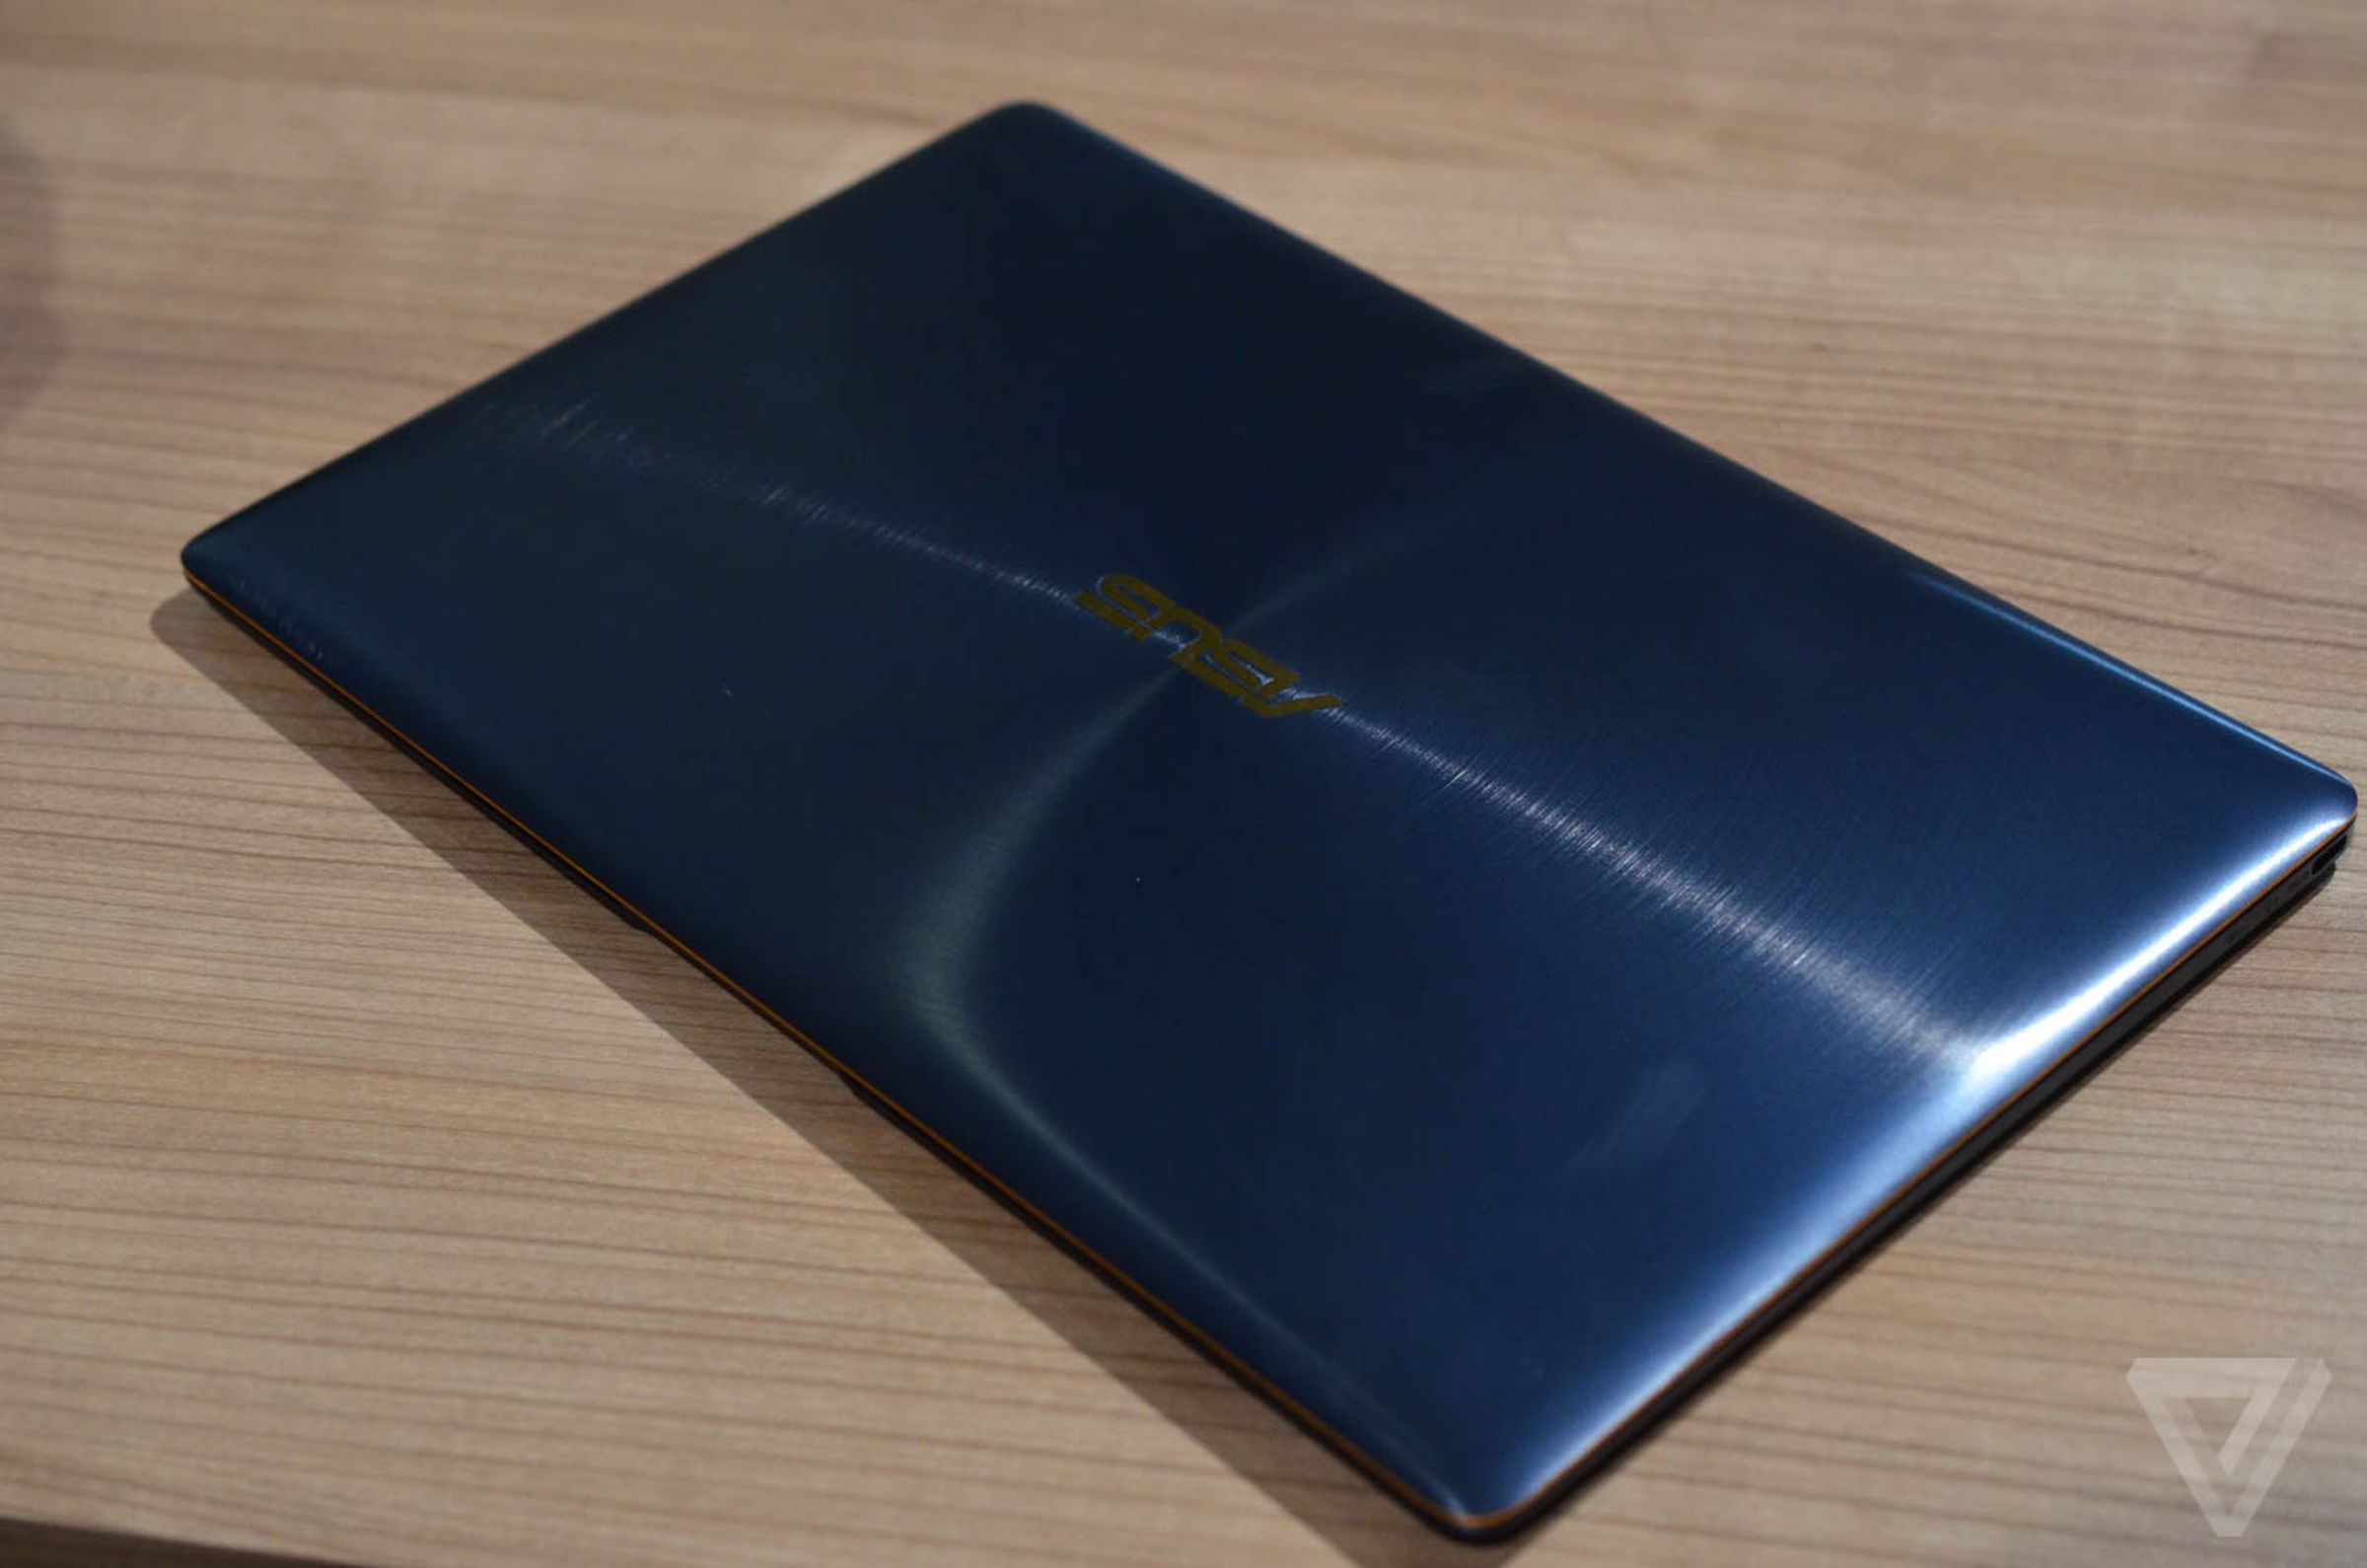 Asus ZenBook 3 hands-on photos